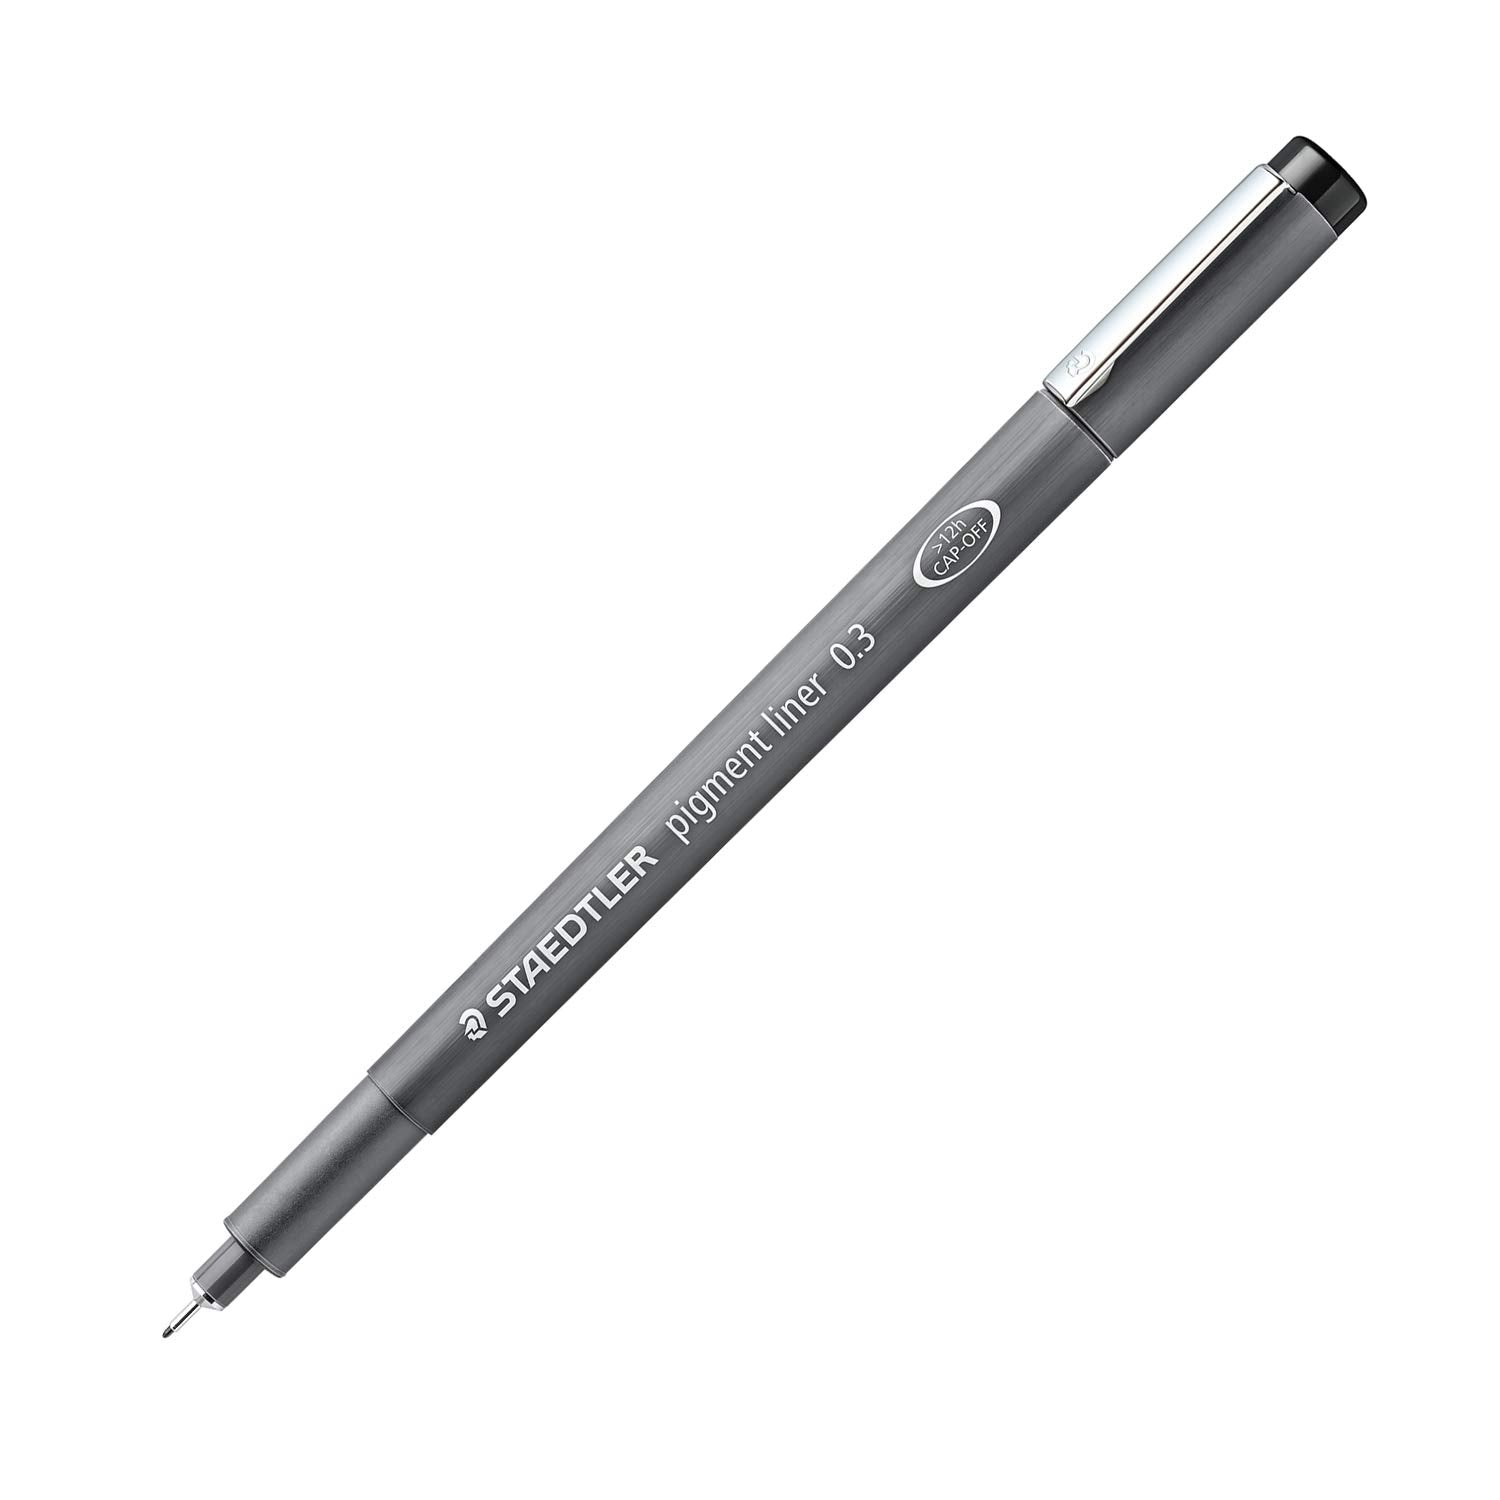 1 Piece Pigment Liner Pigma Pen Micron Marker Pen 0.05/0.1/0.2/0.3